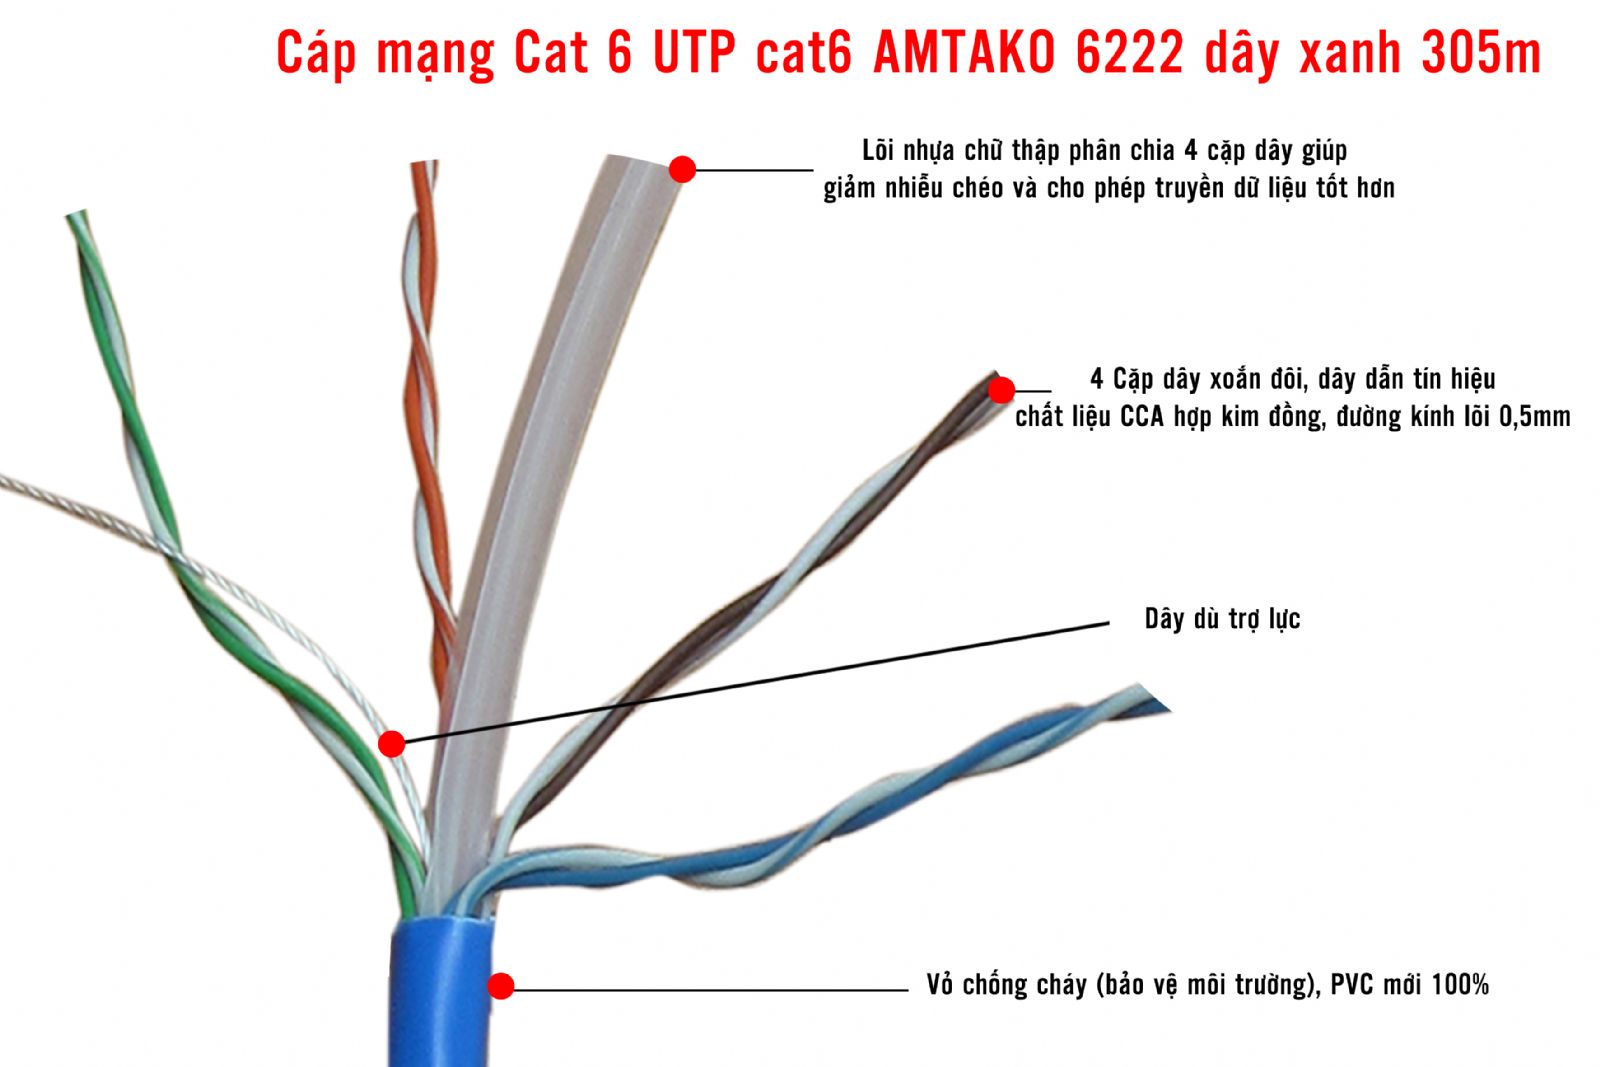 Cáp mạng UTP Cat 6e AMTAKO dây xanh 305m/1 thùng